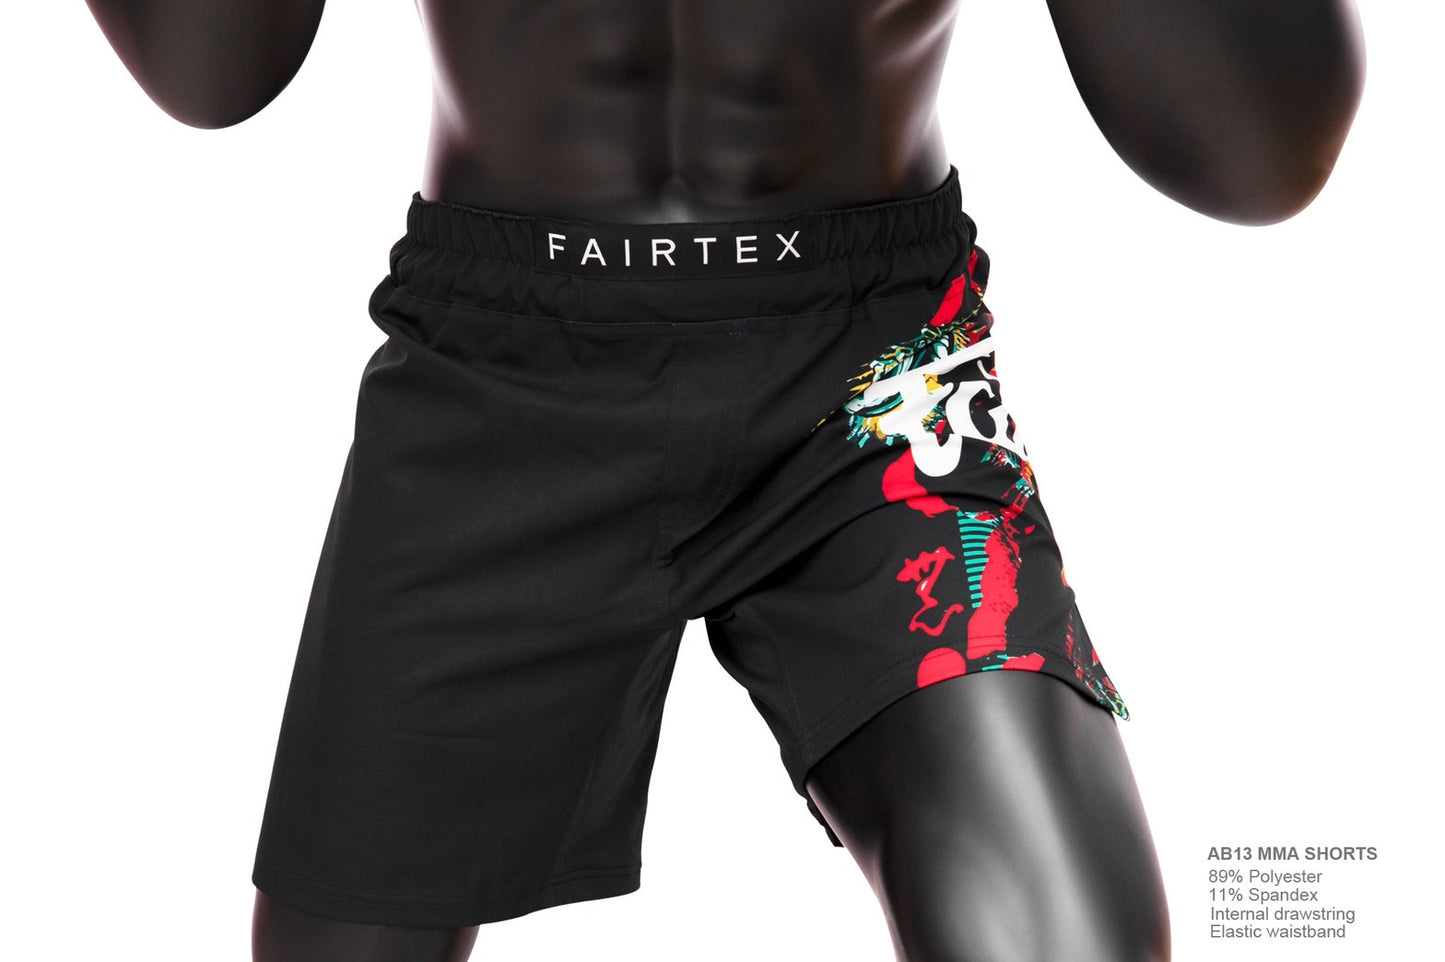 Fairtex Board Shorts AB13